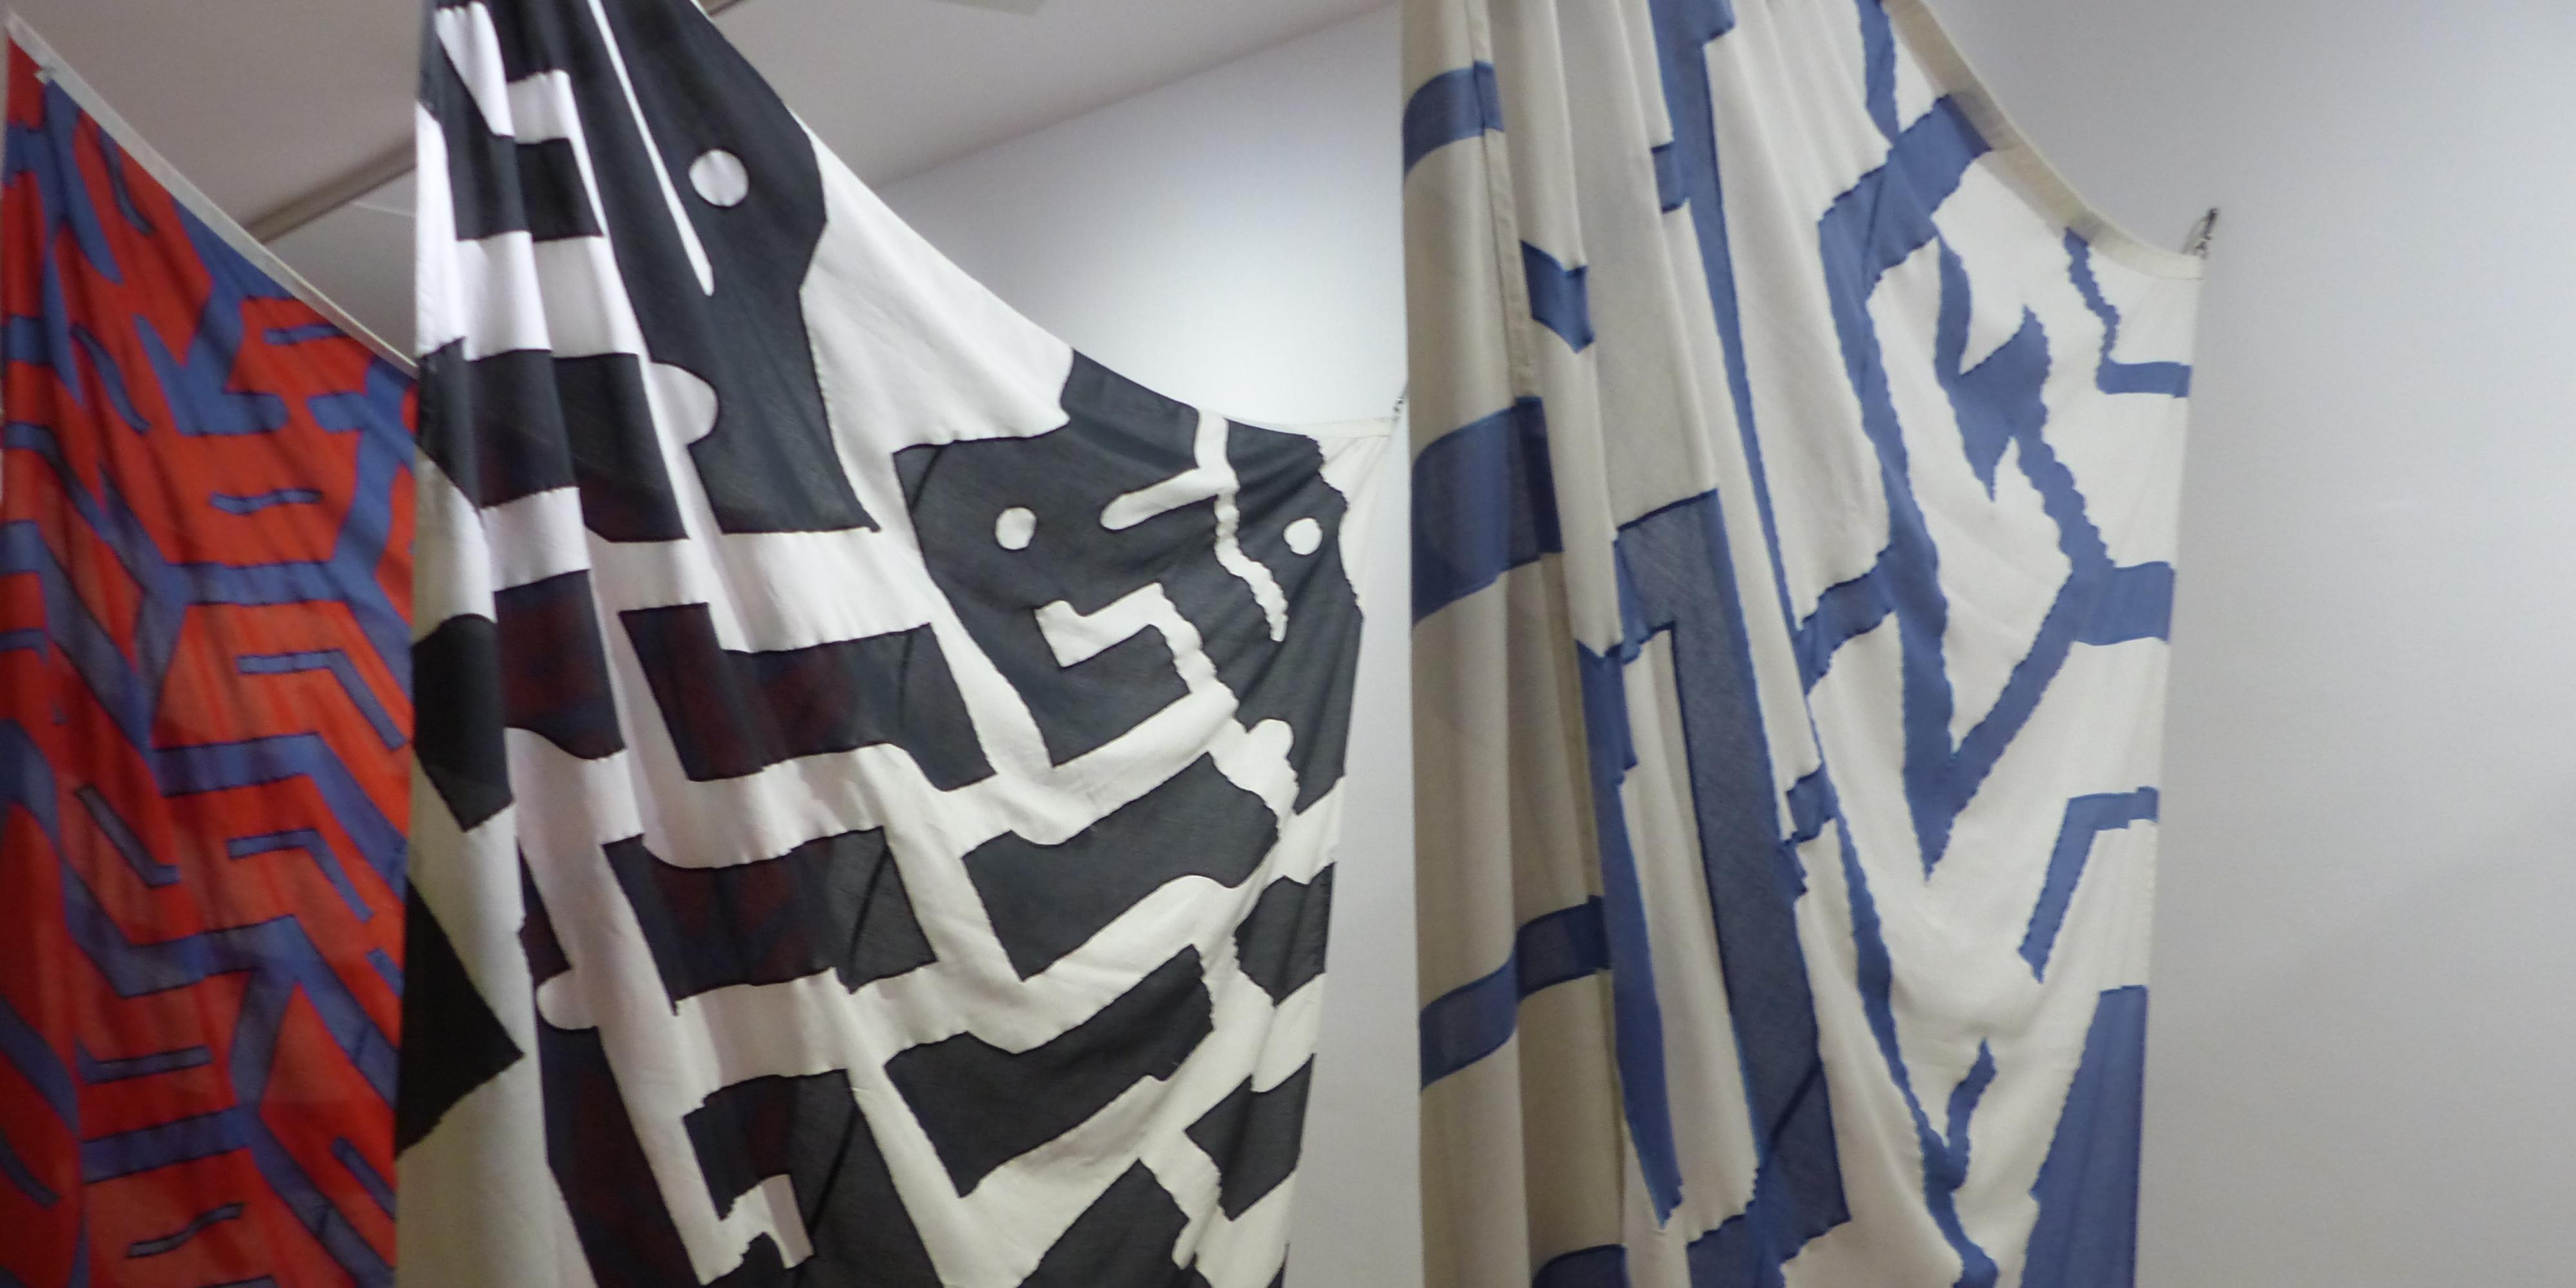 Una instal·lació d’11 banderes dissenyades per Peter Stämpfli als anys